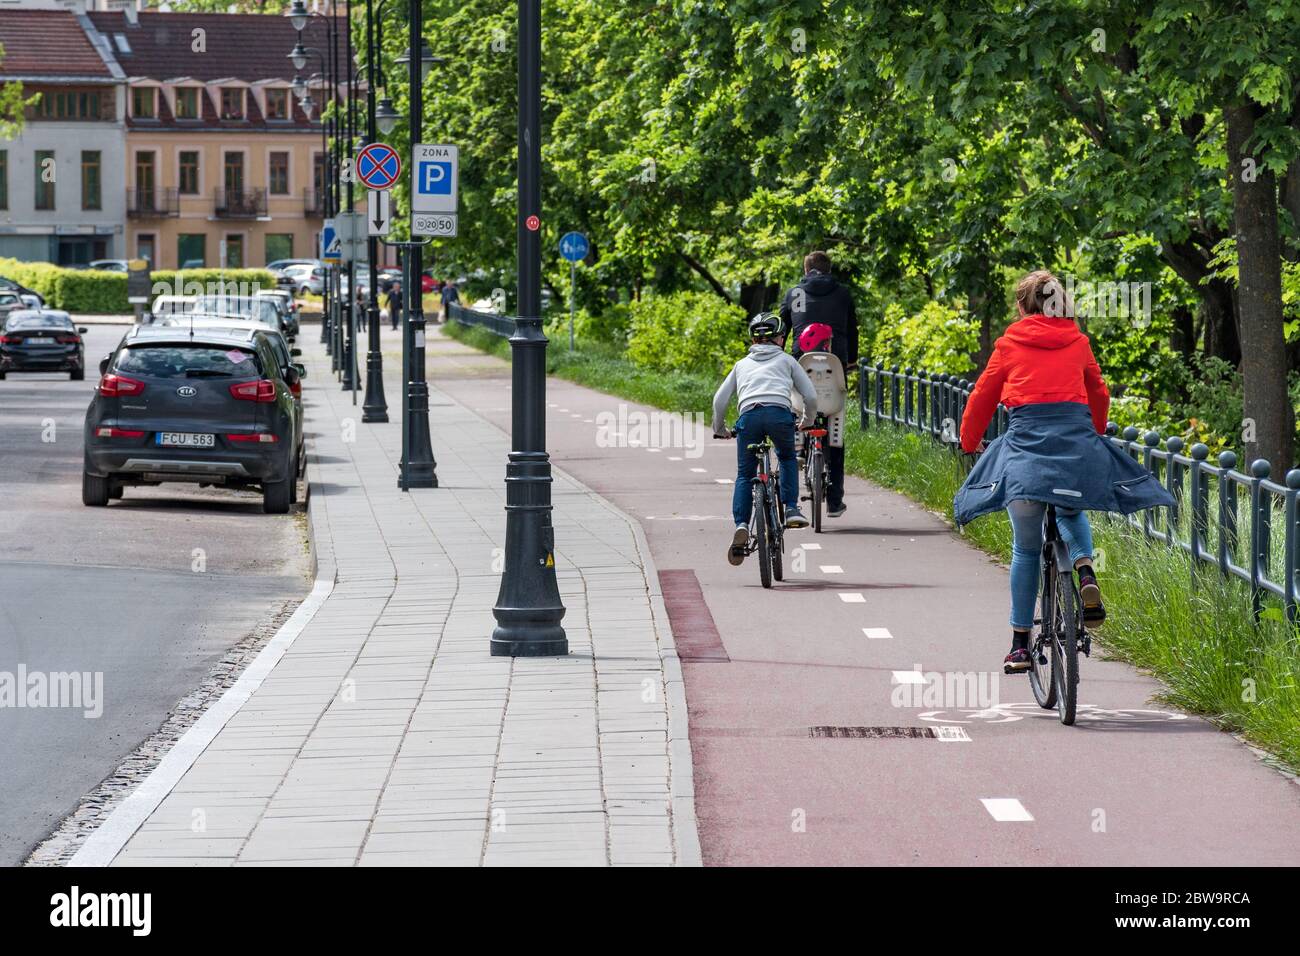 Vélo de famille sur la route pendant l'urgence de Covid ou coronavirus, concept de transport durable Banque D'Images